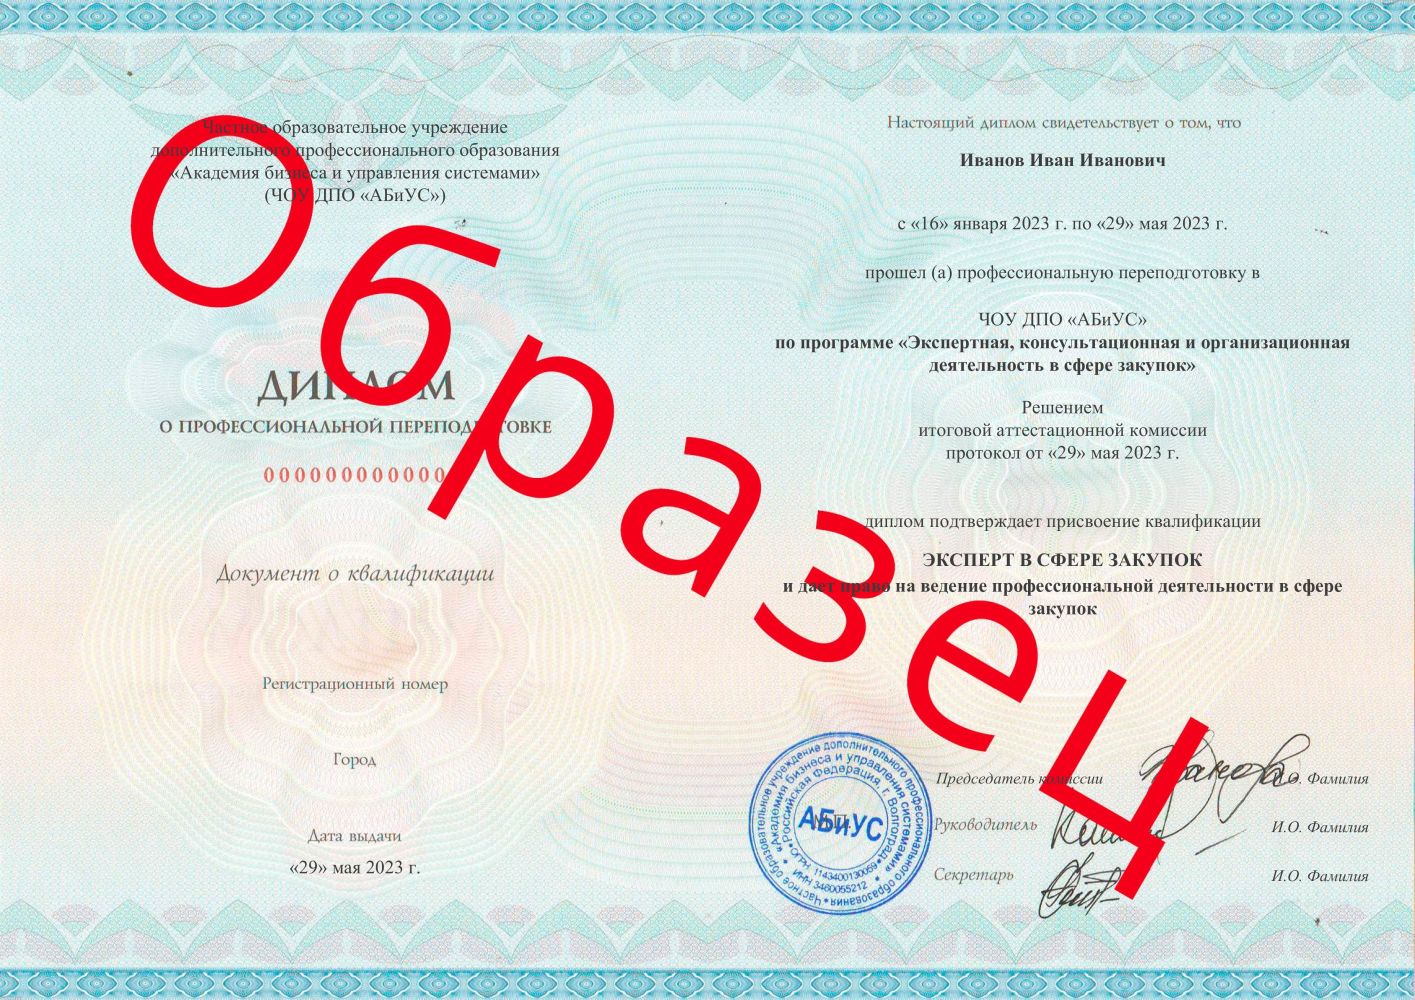 Диплом Экспертная, консультационная и организационная деятельность в сфере закупок 500 часов 13125 руб.